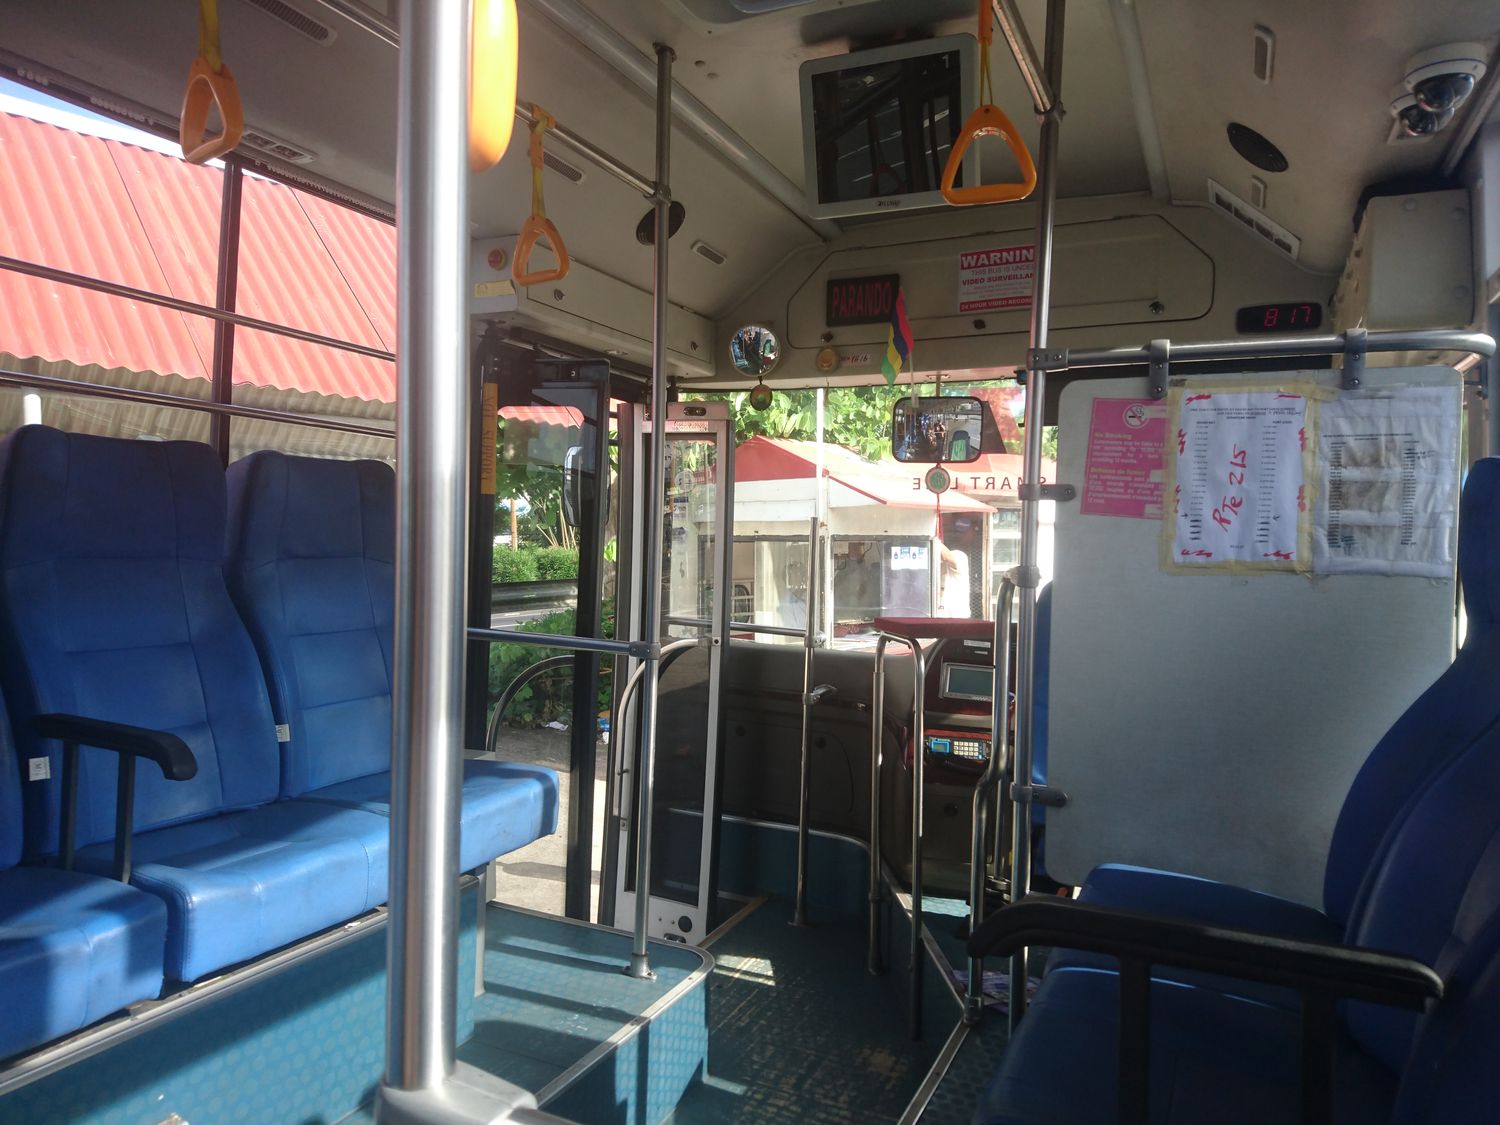 Le bus express qui relie la capitale à Grand Baie est climatisé. Un luxe pour l’île, dont la flotte de bus qu’utilisent quotidiennement les Mauriciens est certes nombreuse, mais vieillissante et sans climatisation.